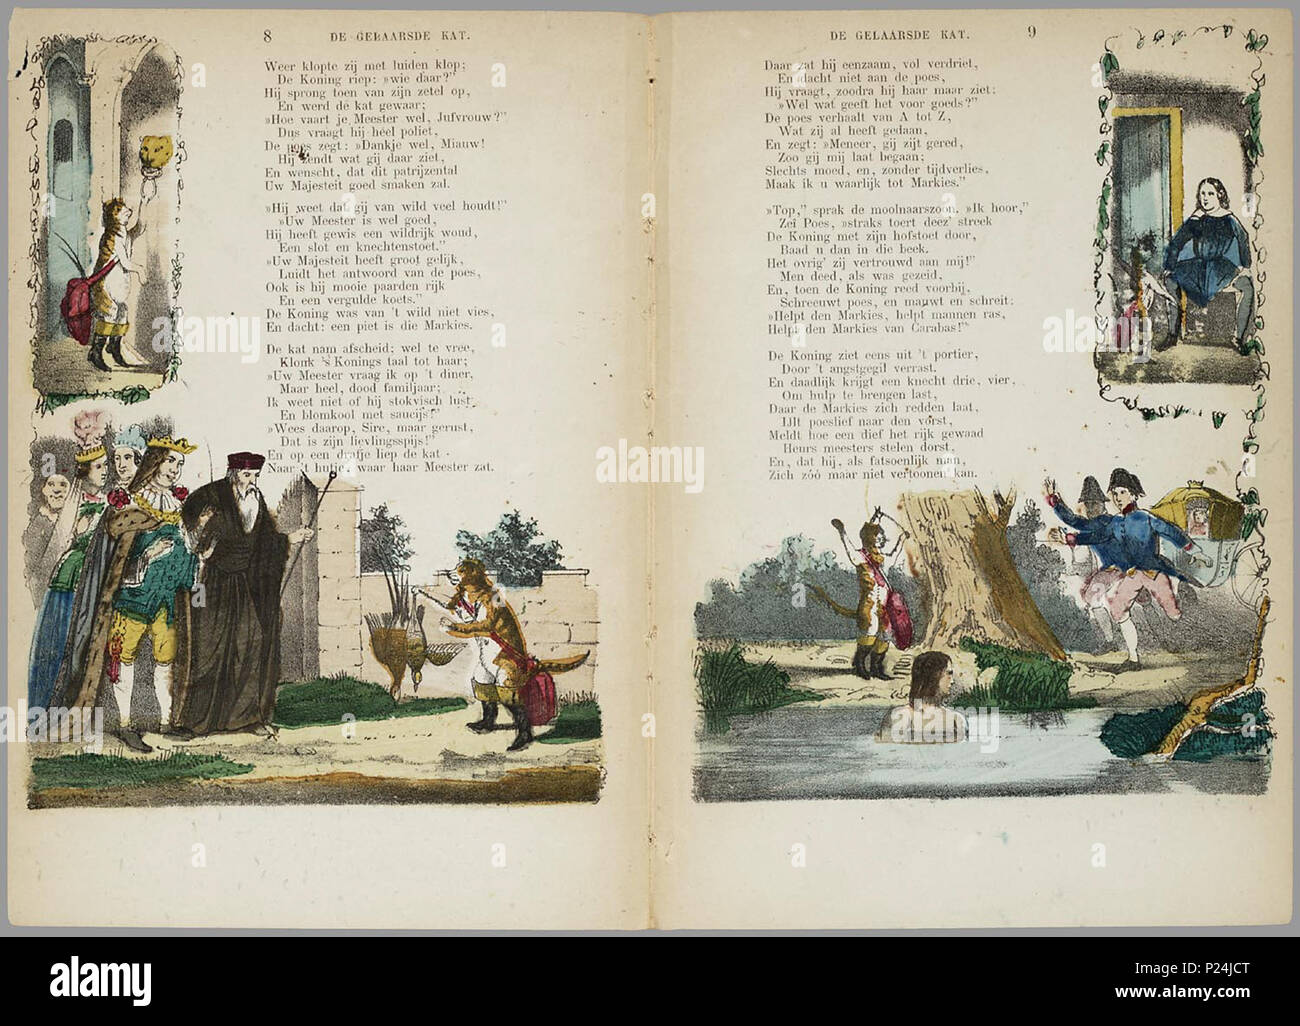 . De gelaarsde kat, of Hoe de marquis van Carabas een groot en rijk heer werd / door A. van der Hoop Jr.'s Zn. ; naar Charles Perrault.  Bewerking van het sprookje met afbeeldingen in zwart op de voorkant, en twee handgekleurde illustraties per blad, rondom de klein gedrukte rijmende tekst. // 3e dr. 8 bl : handgekl. lith // Datering: 3e dr. niet in Brinkman, 6e druk 1875, schatting tussen 1856 en 1875 // 1e uitg.: 1856 Prentenboeken // Sprookjes // Rijmvertellingen . A. van der Hoop Jr.'s zoon // Charles Perrault  PRB01 86390288X 003, 22-03-2006, 13:07,  8C, 3740x2804 (2687+2846), 100%%%%, Pr Stock Photo